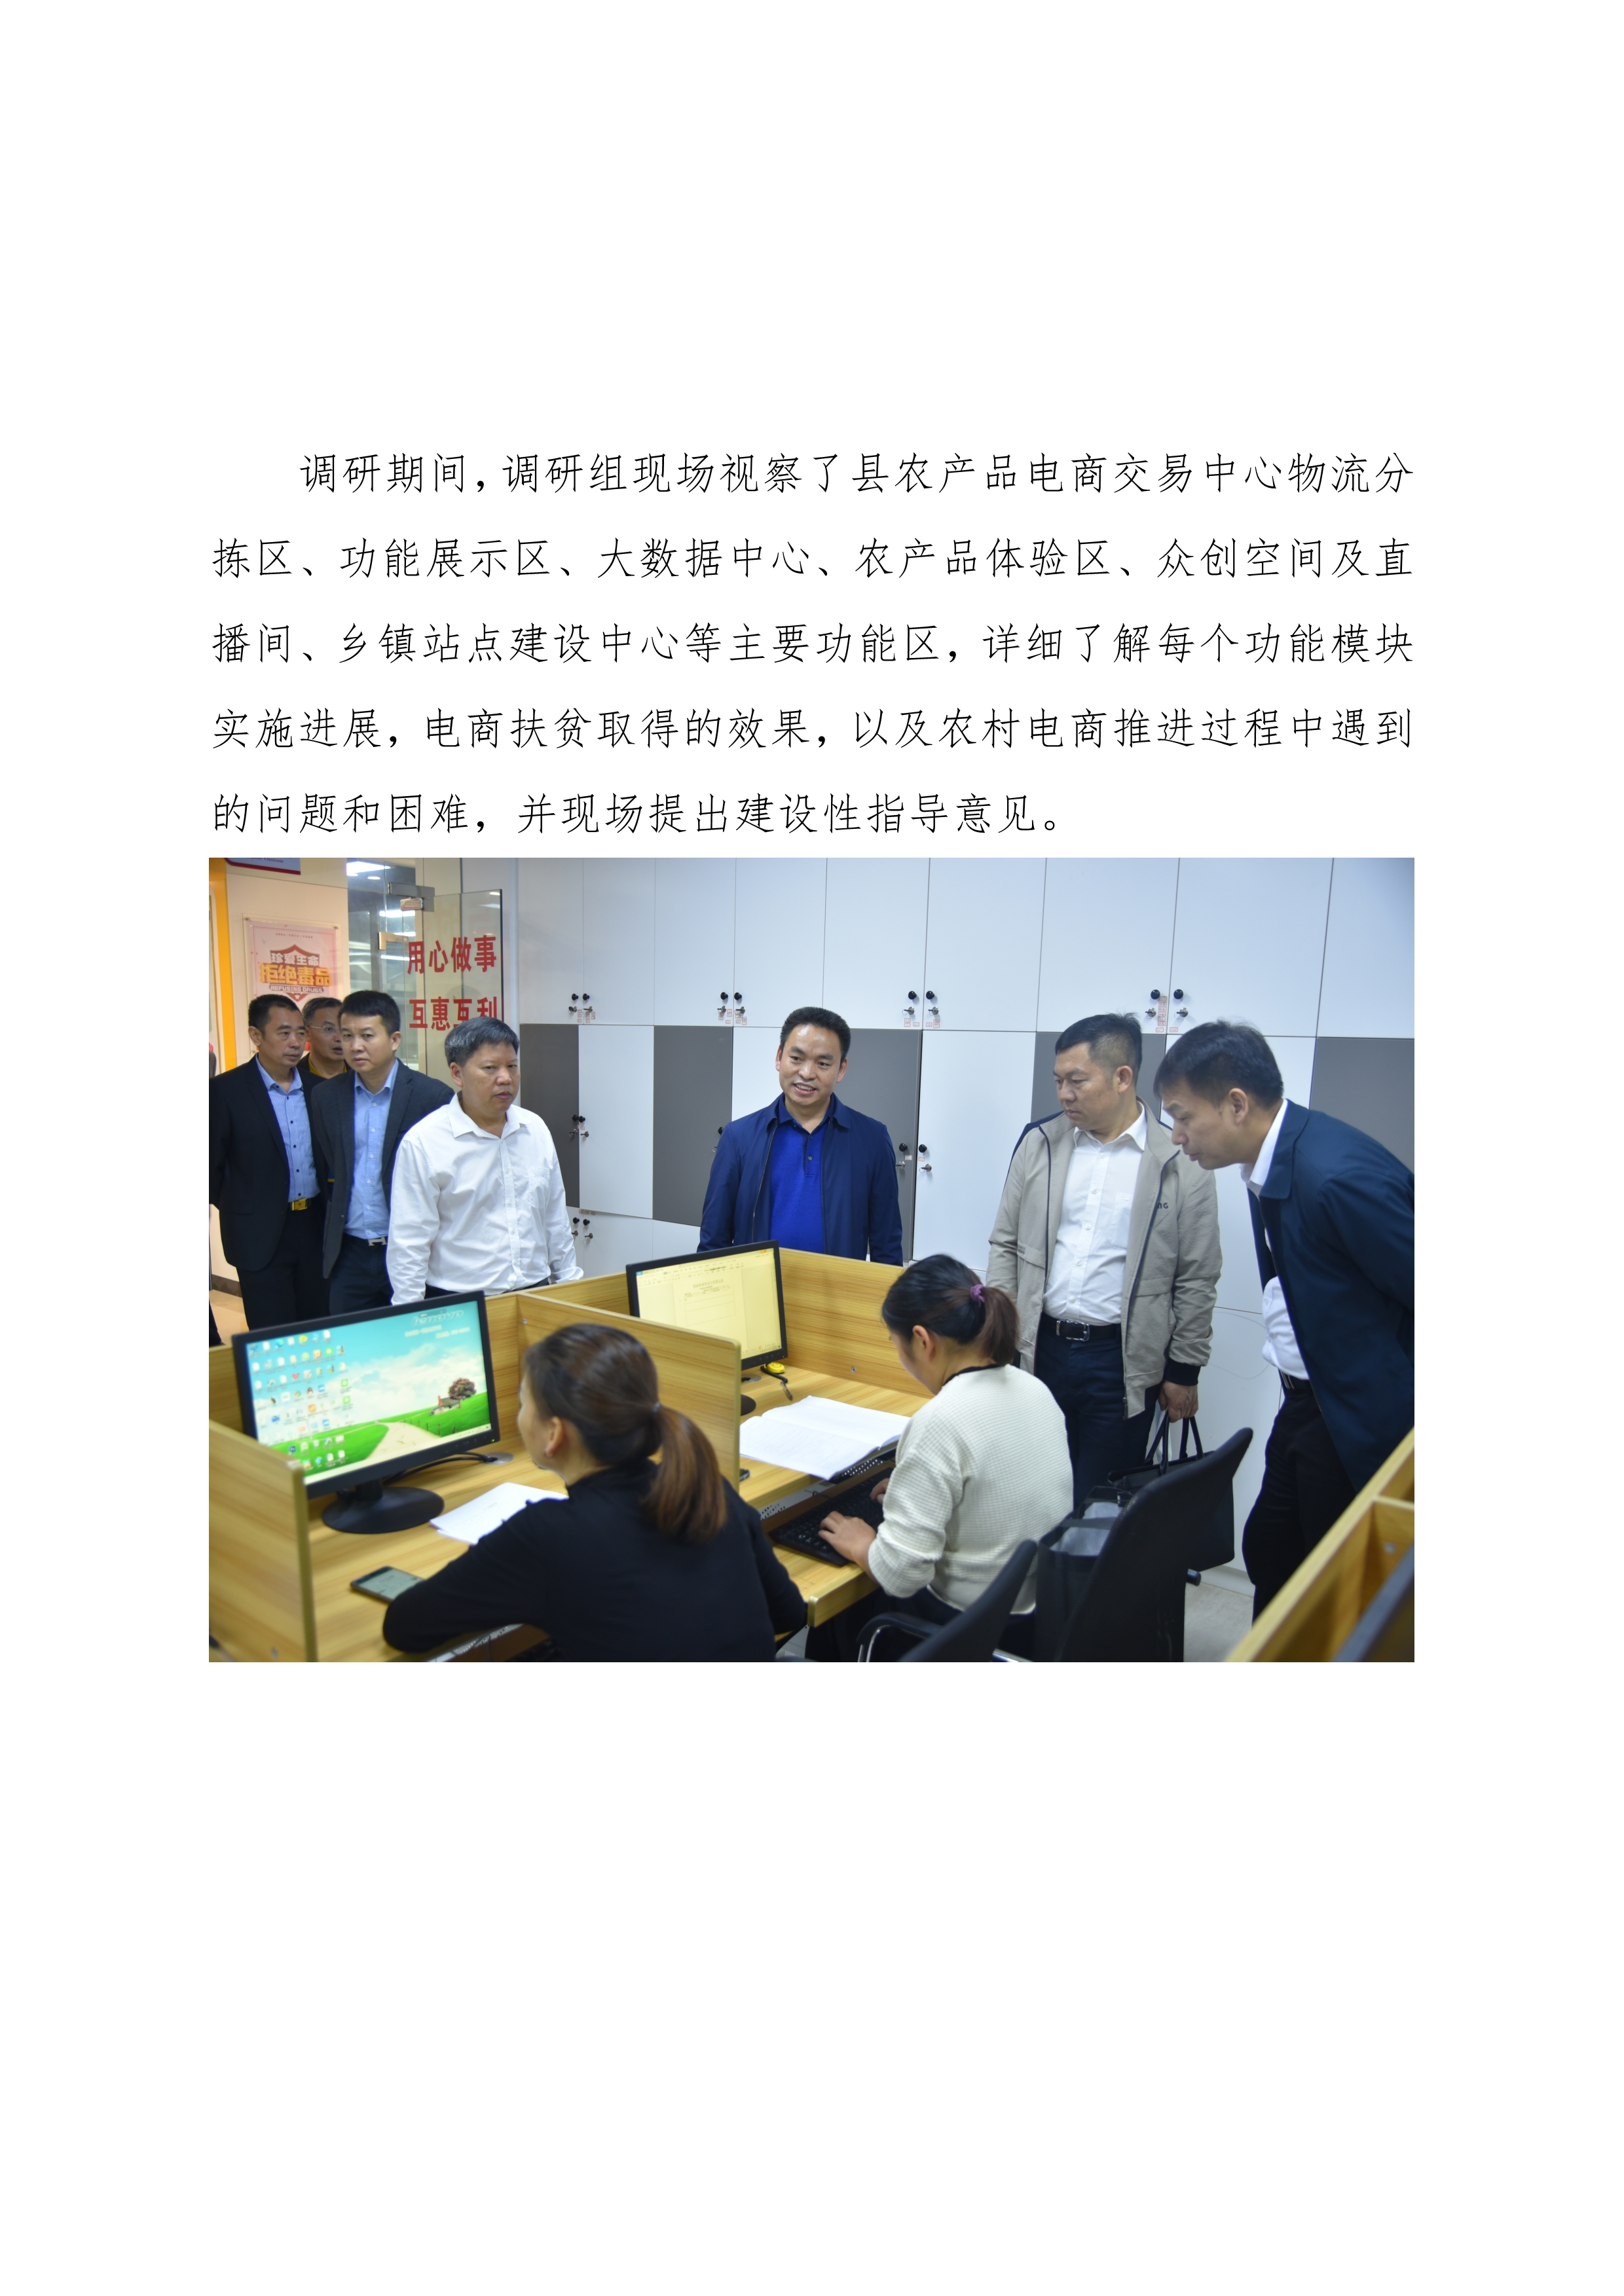 连平县电子商务进农村综合示范县项目工作简报第11期_1.jpg